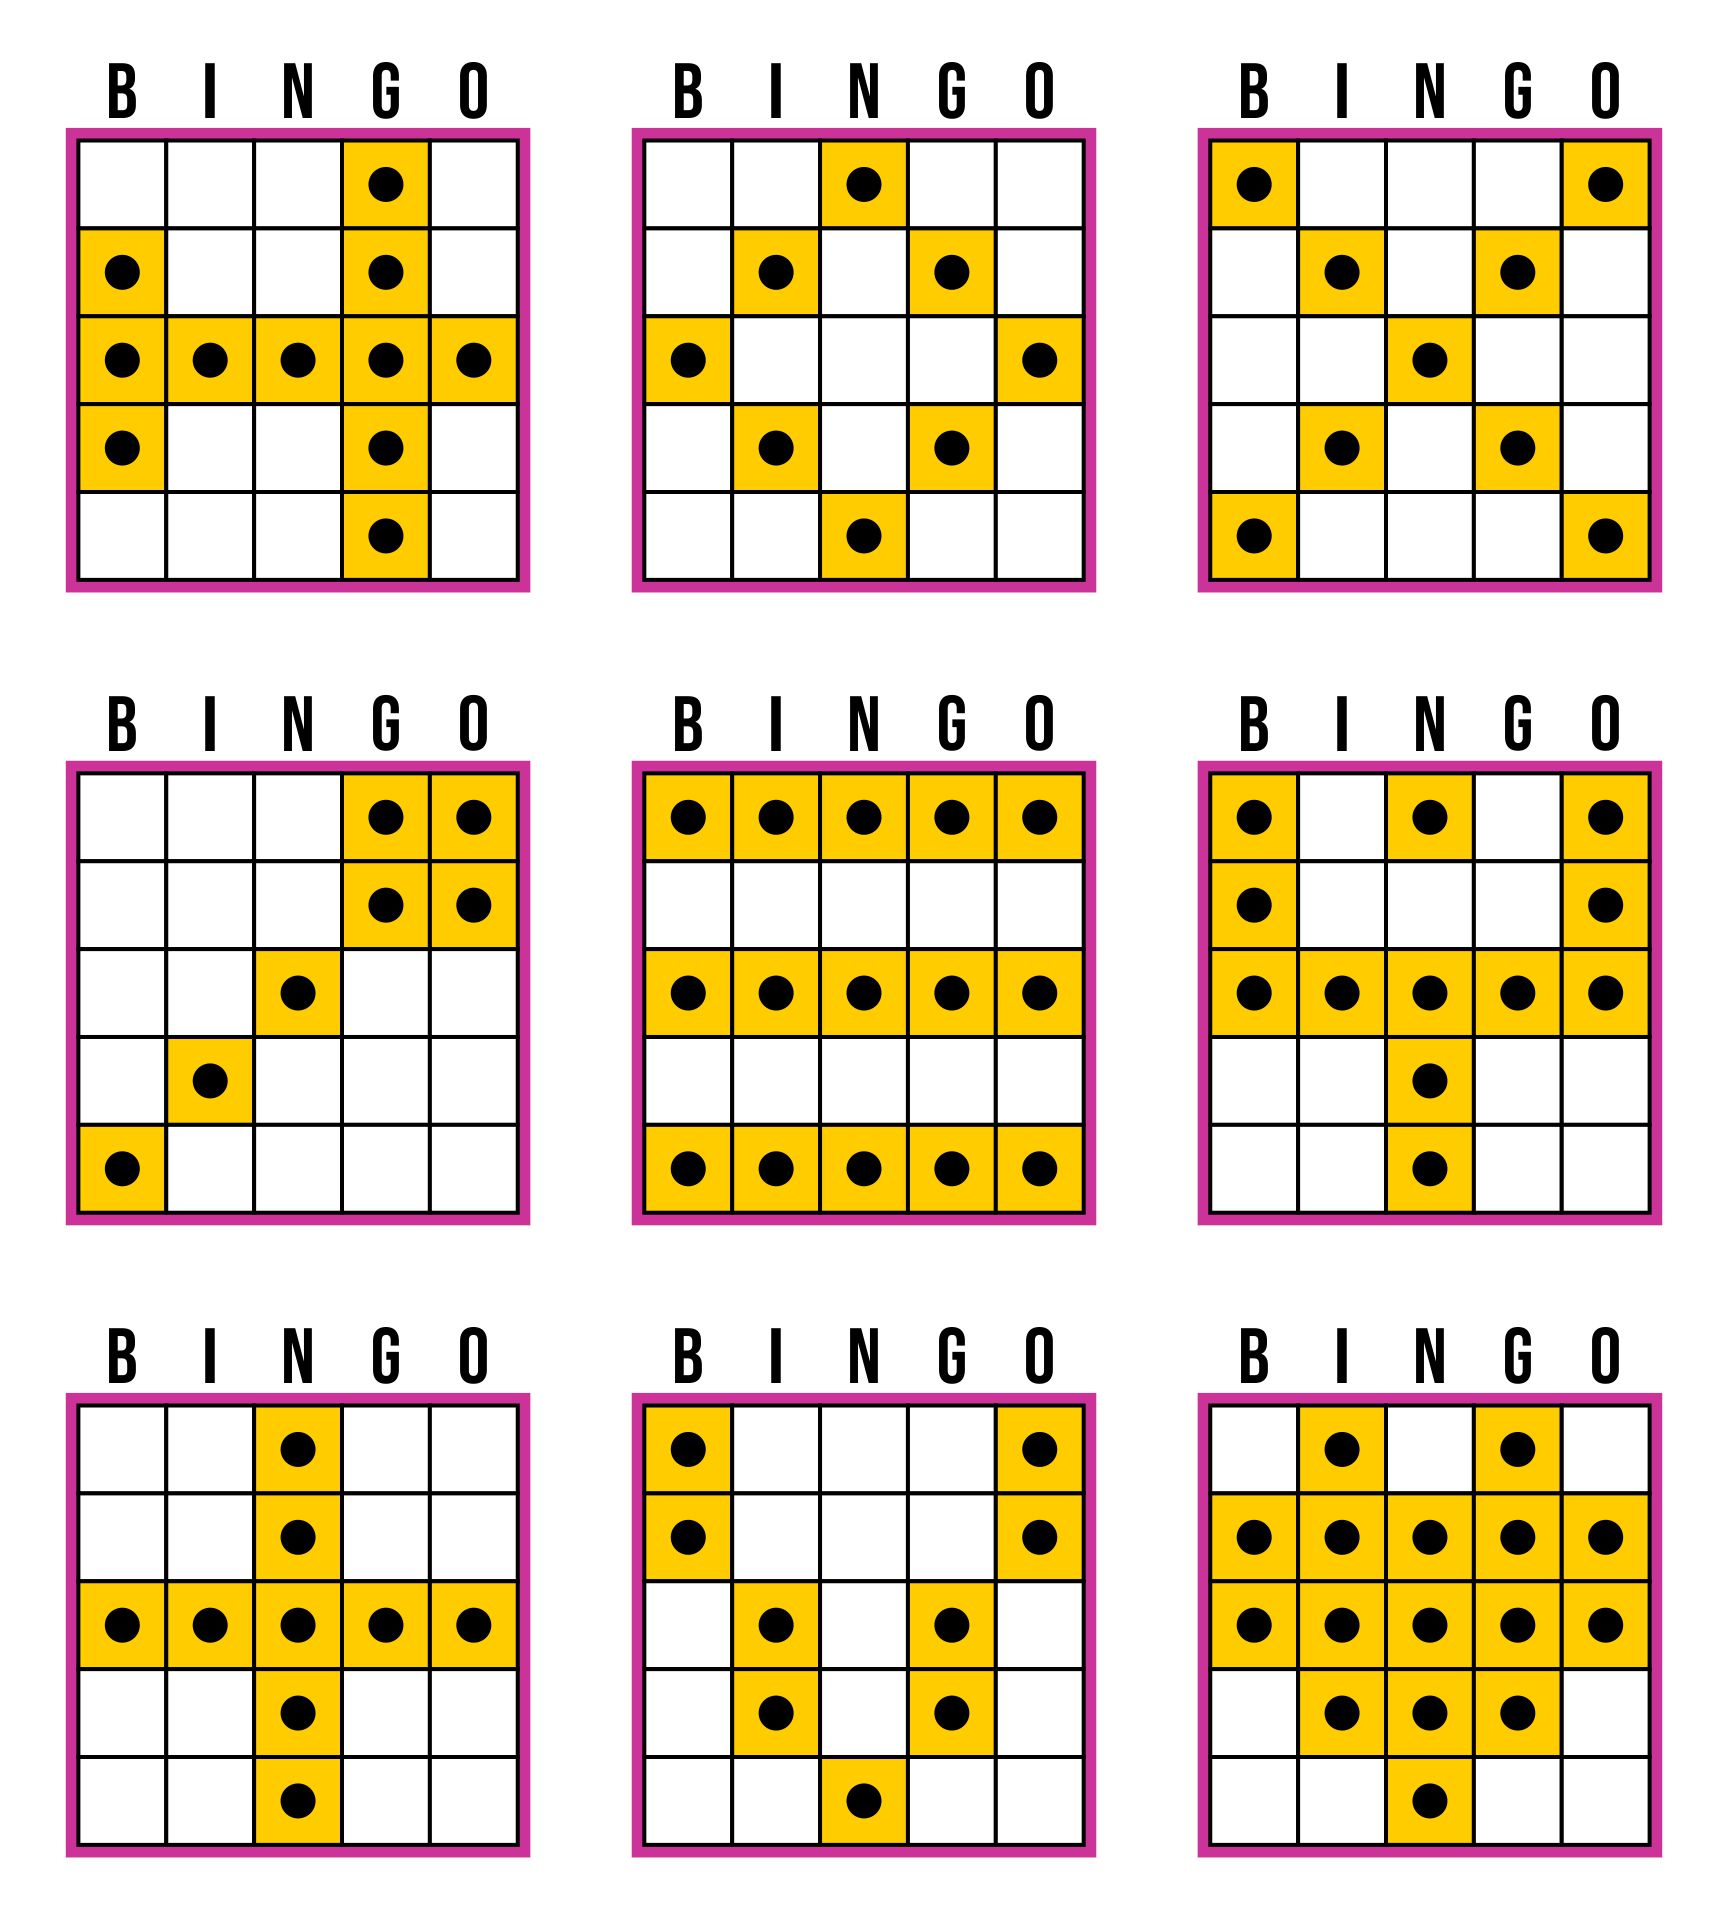 different-bingo-games-no-results-found